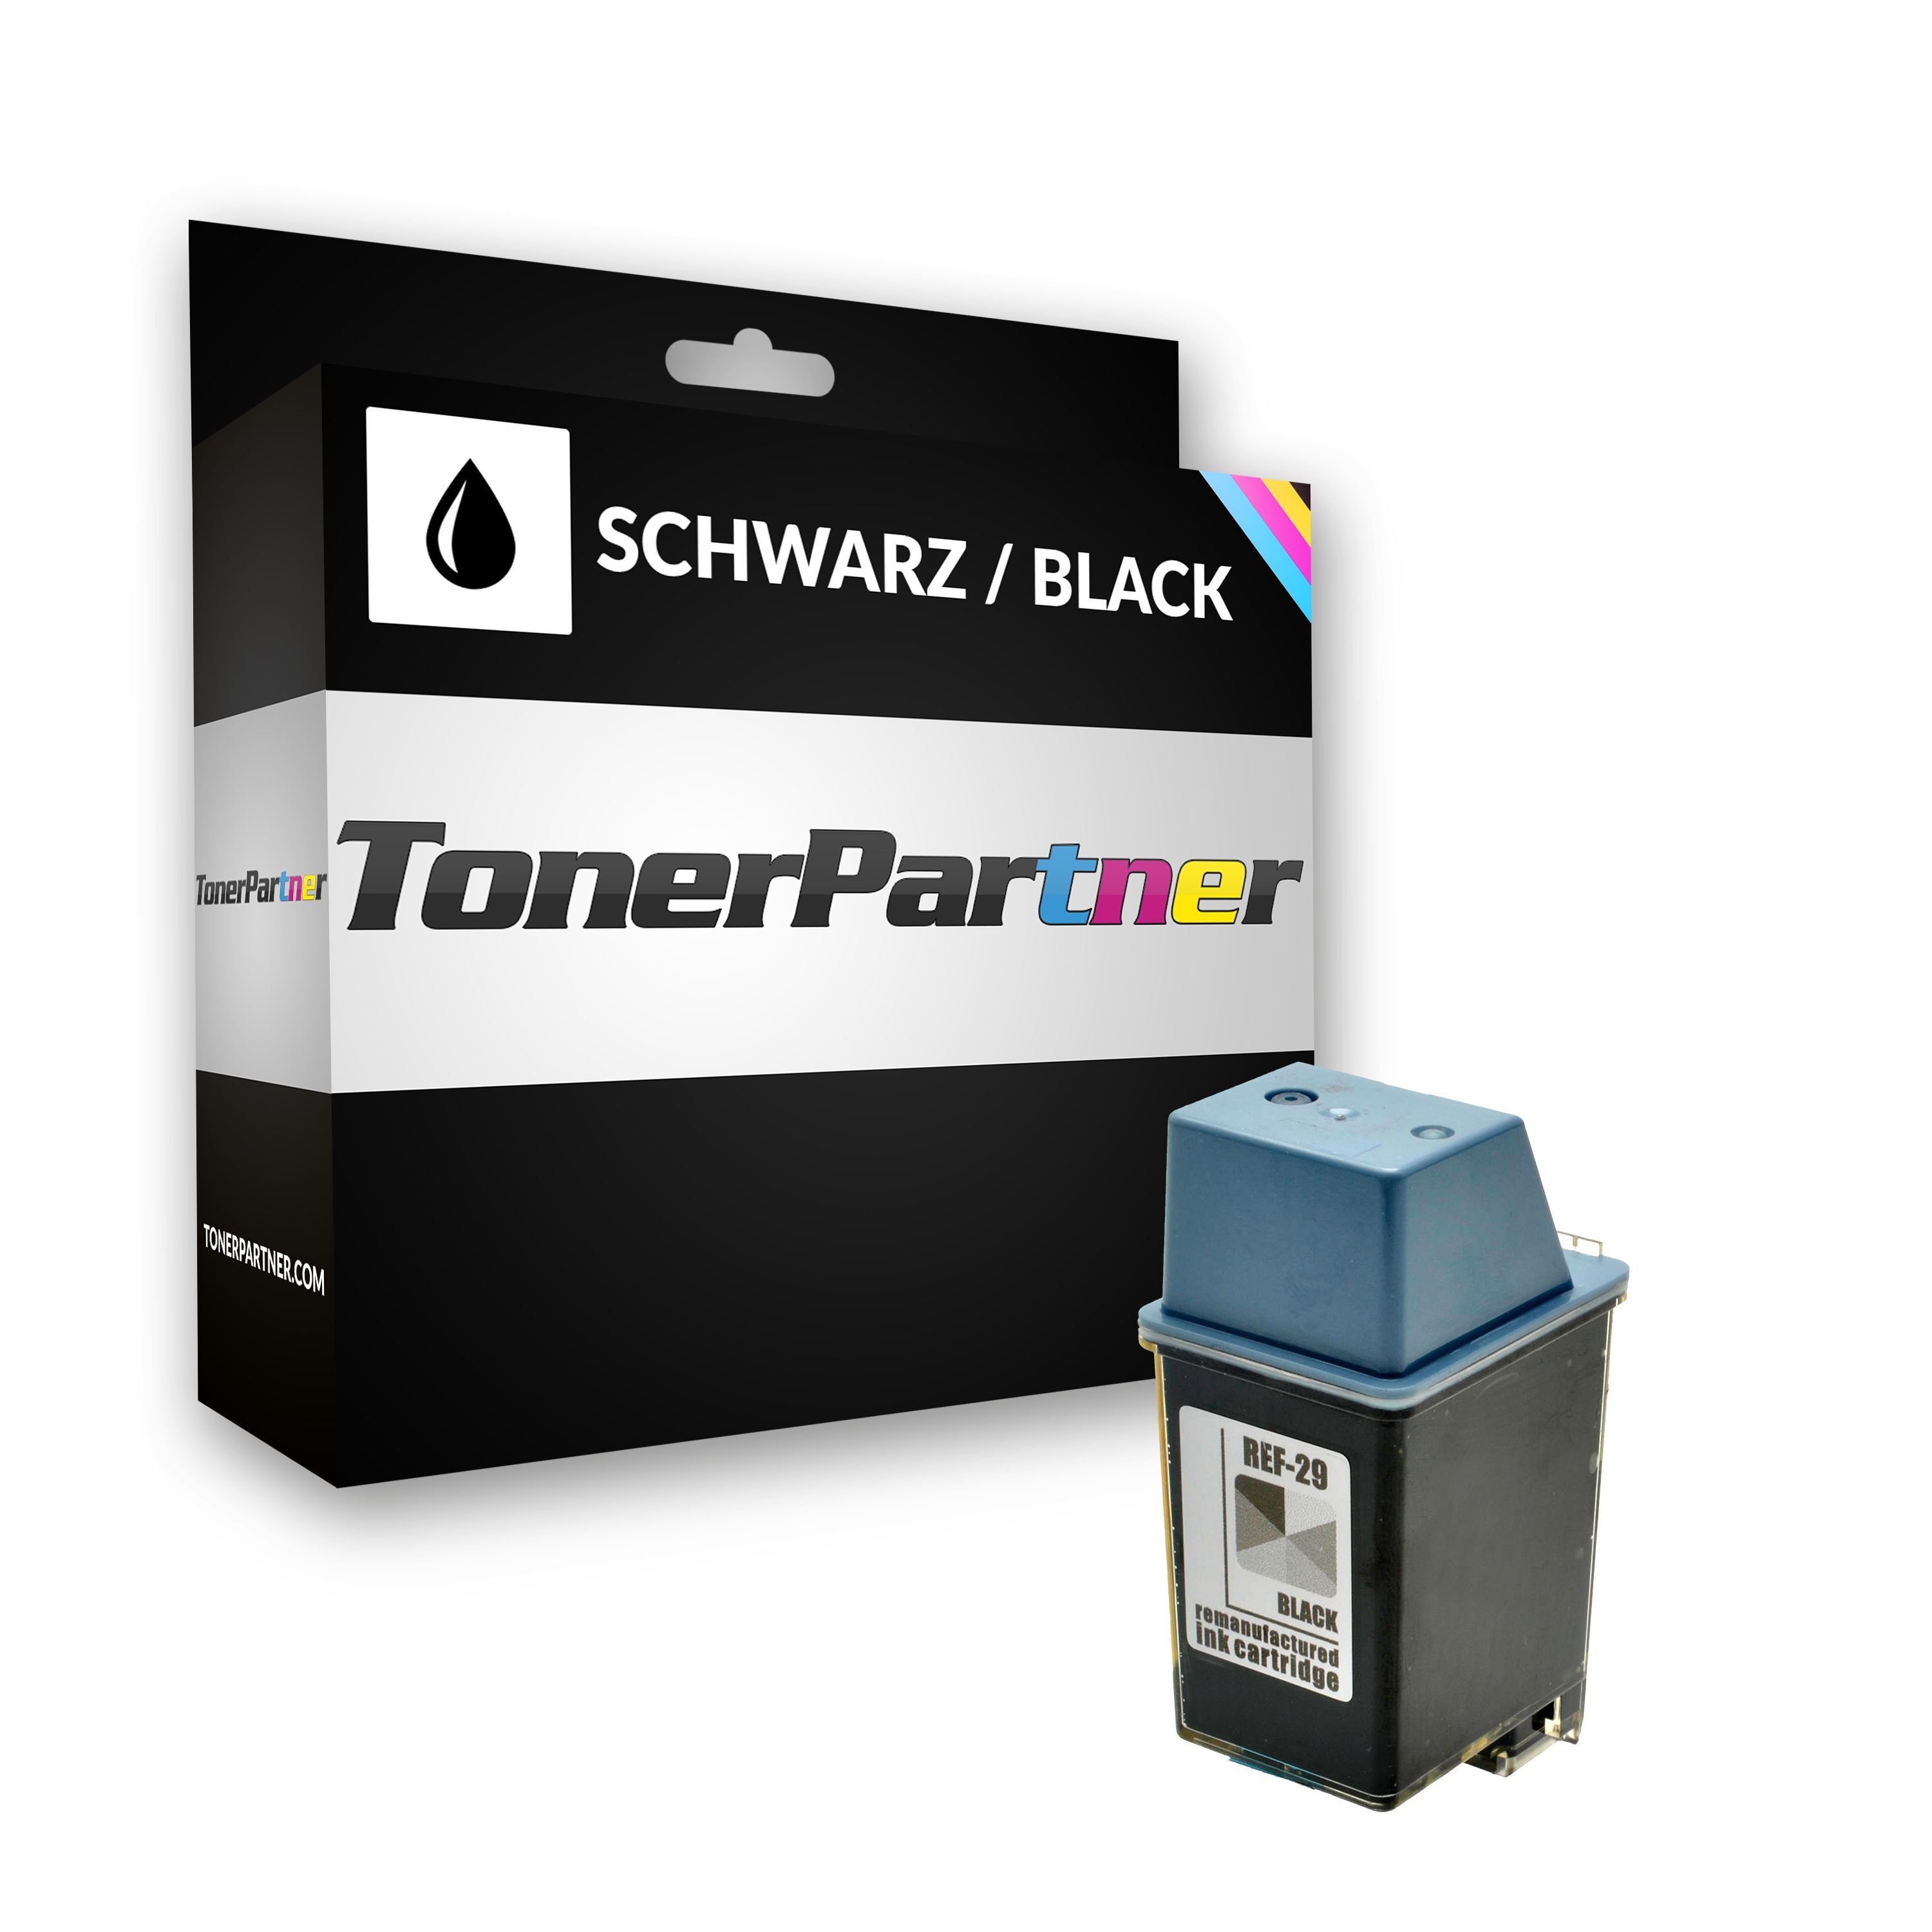 TonerPartner Kompatibel zu HP Deskwriter 600 Tintenpatrone (29 / 51629 AE) schwarz, 650 Seiten, 3,03 Rp pro Seite, Inhalt: 40 ml von TonerPartner